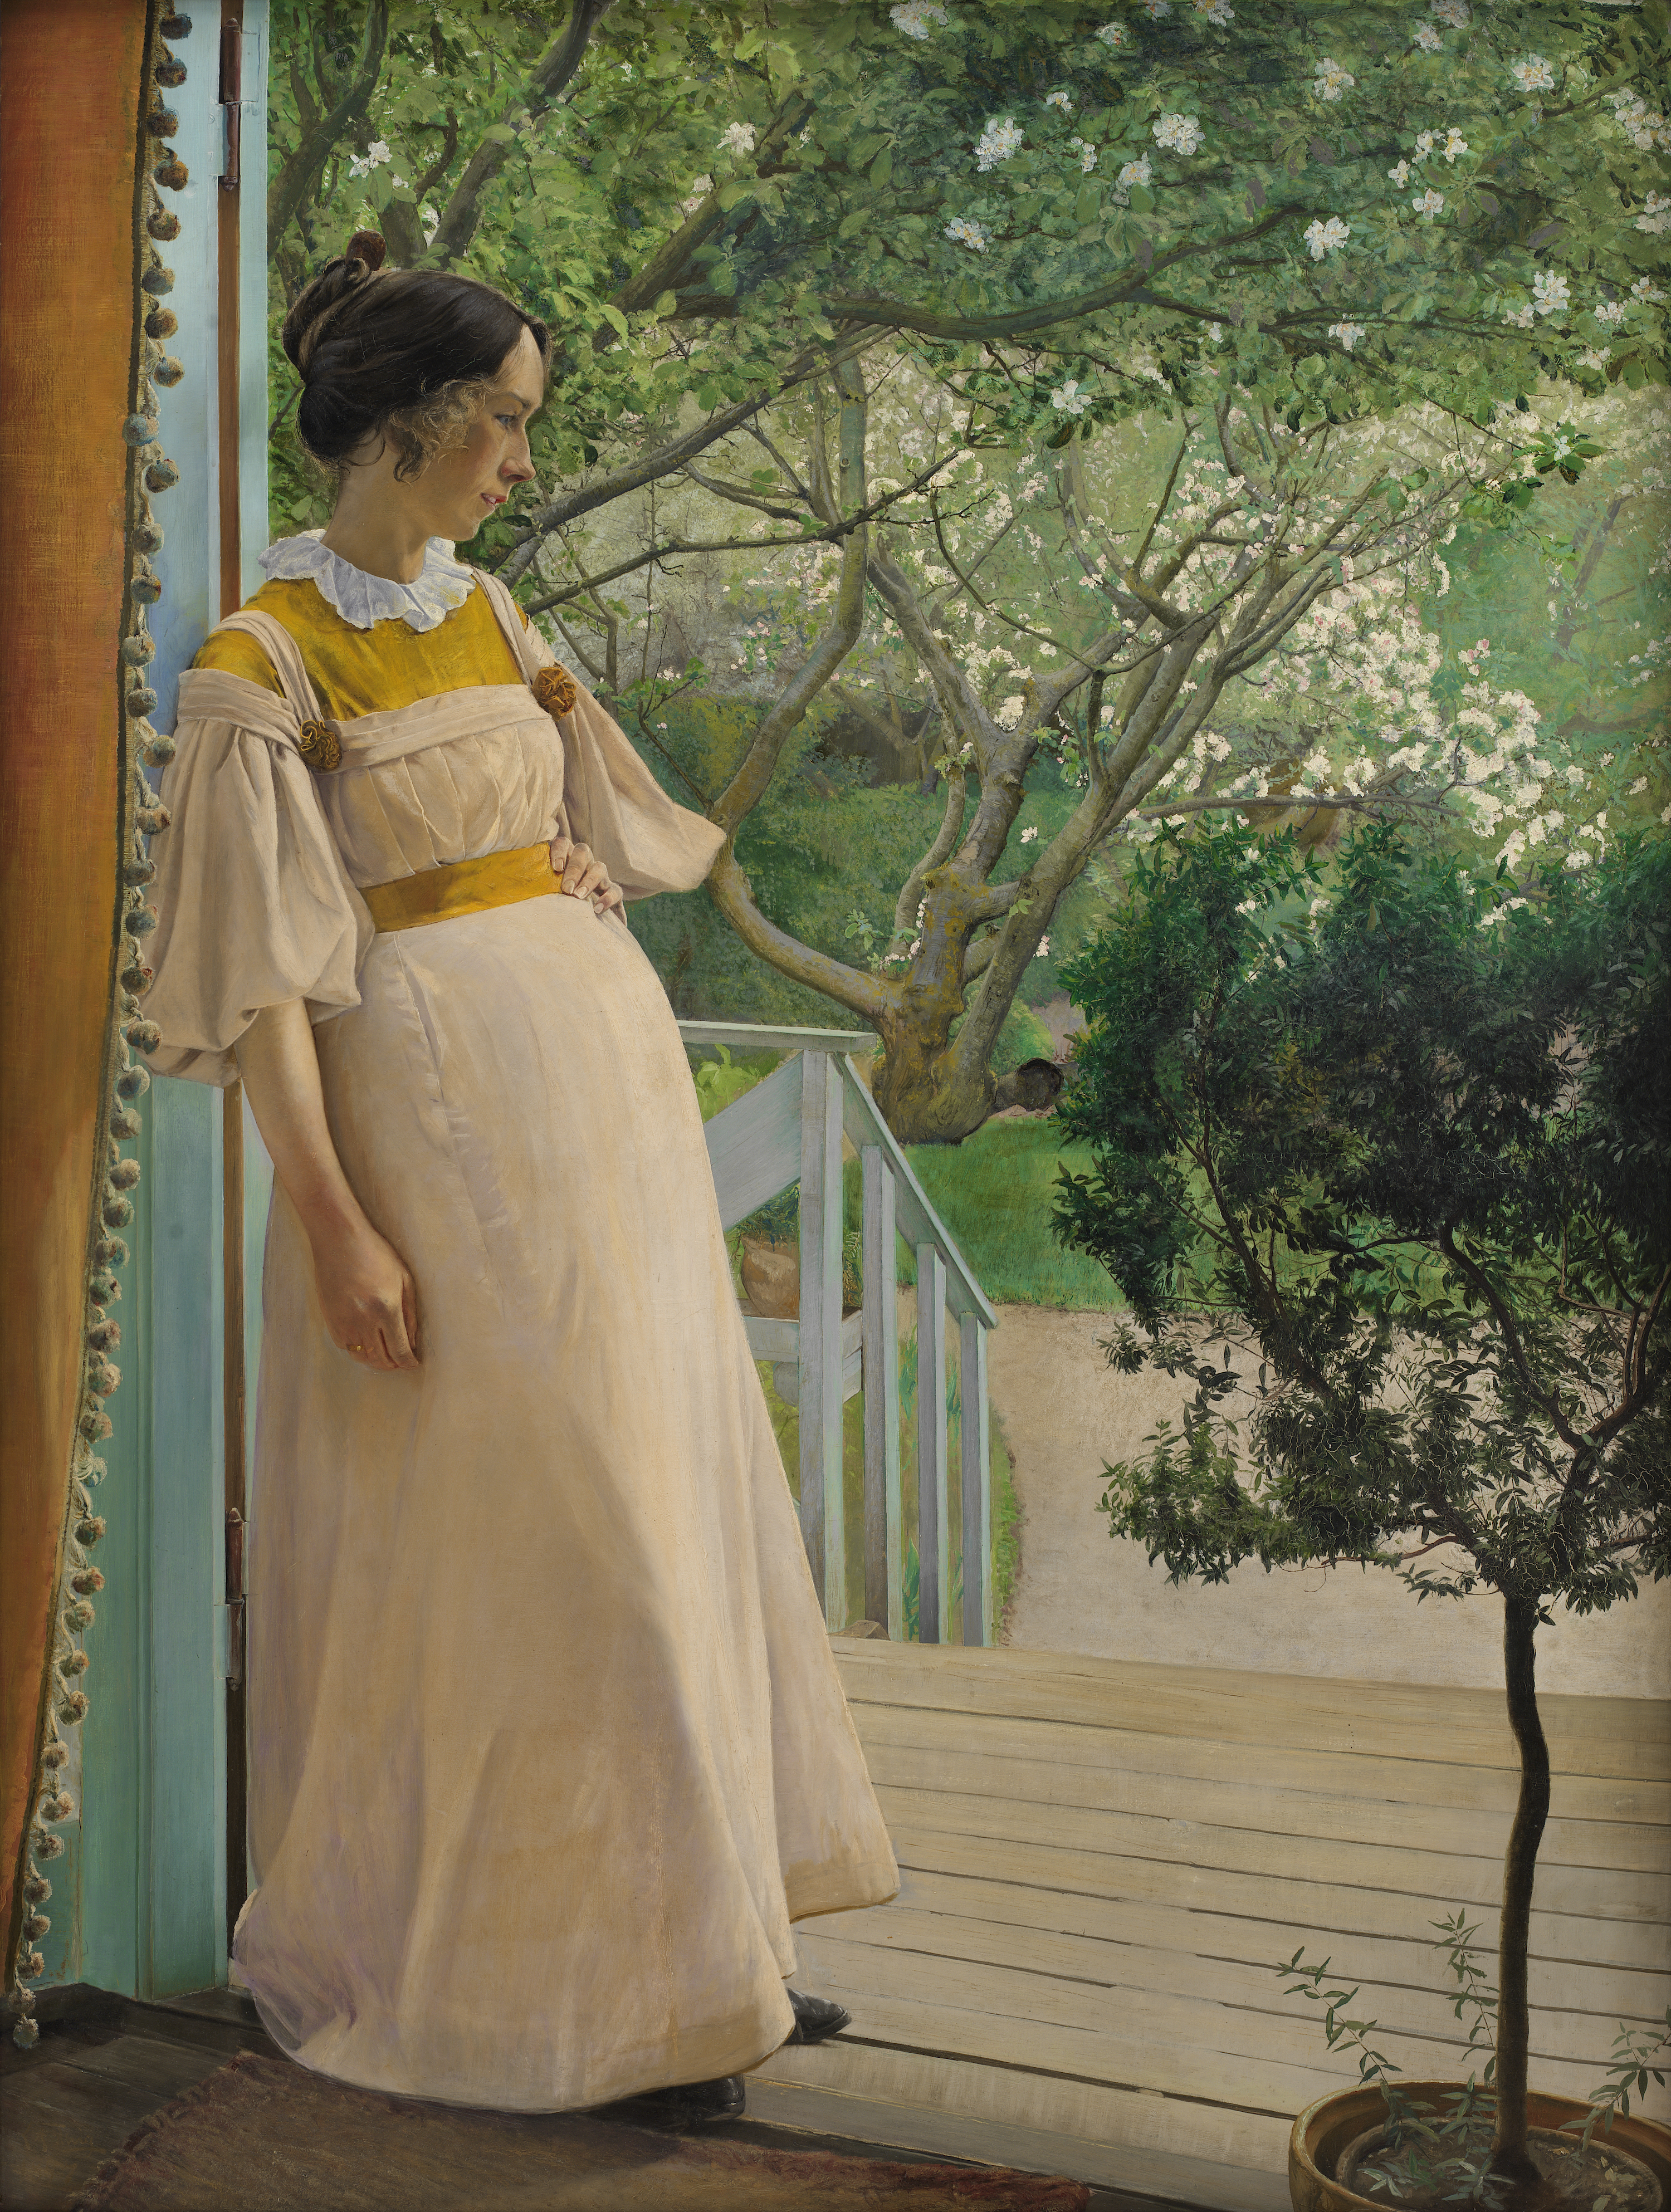 La esposa del artista by Laurits Andersen Ring - 1897 - 191 x 144 cm Galería Nacional de Dinamarca